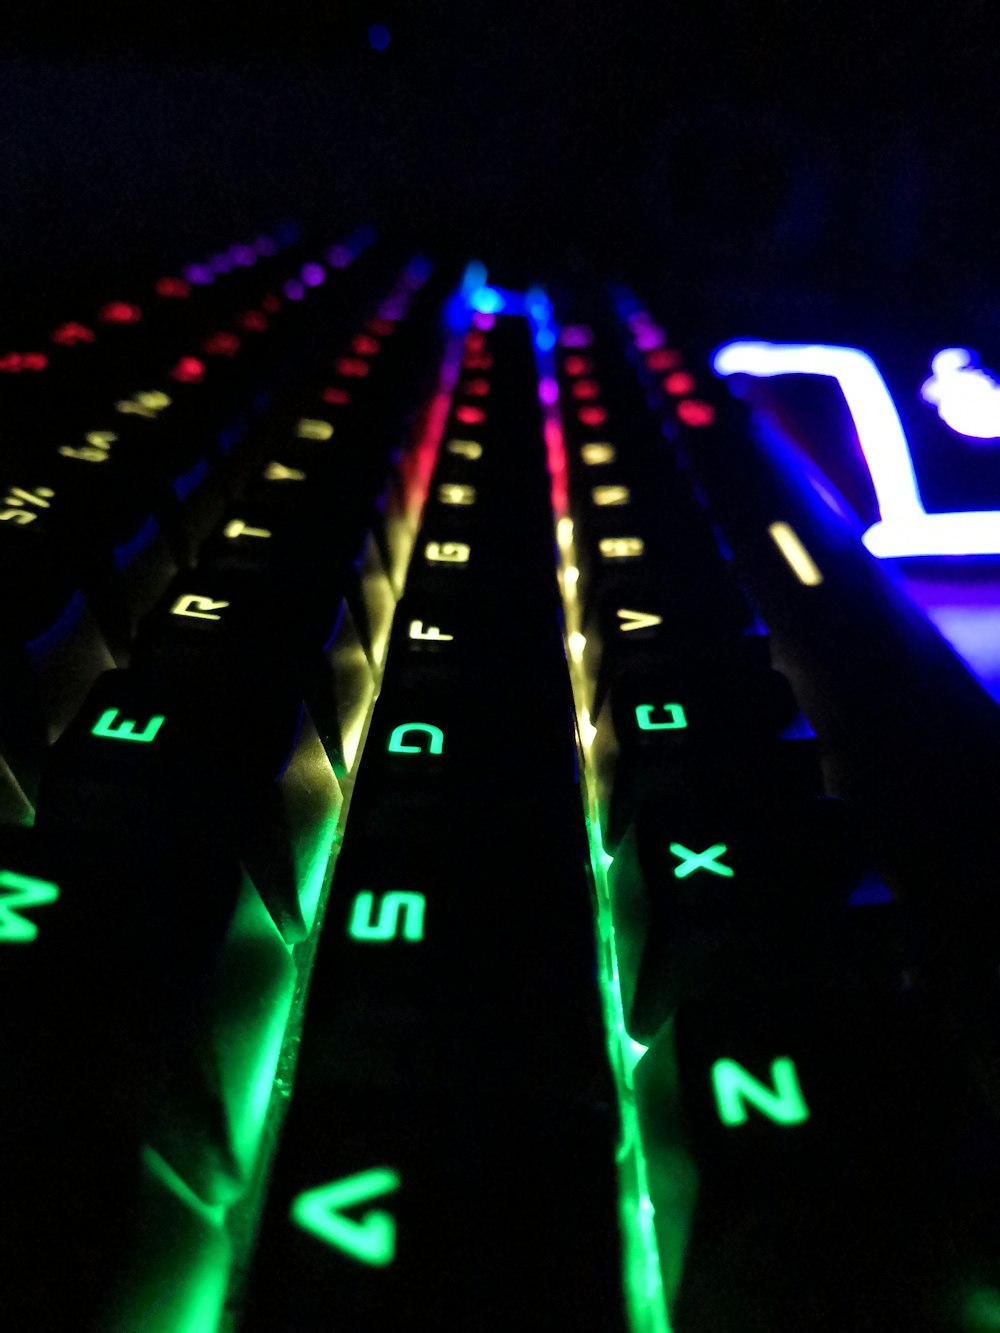 teclado mecânico preto na foto de close-up